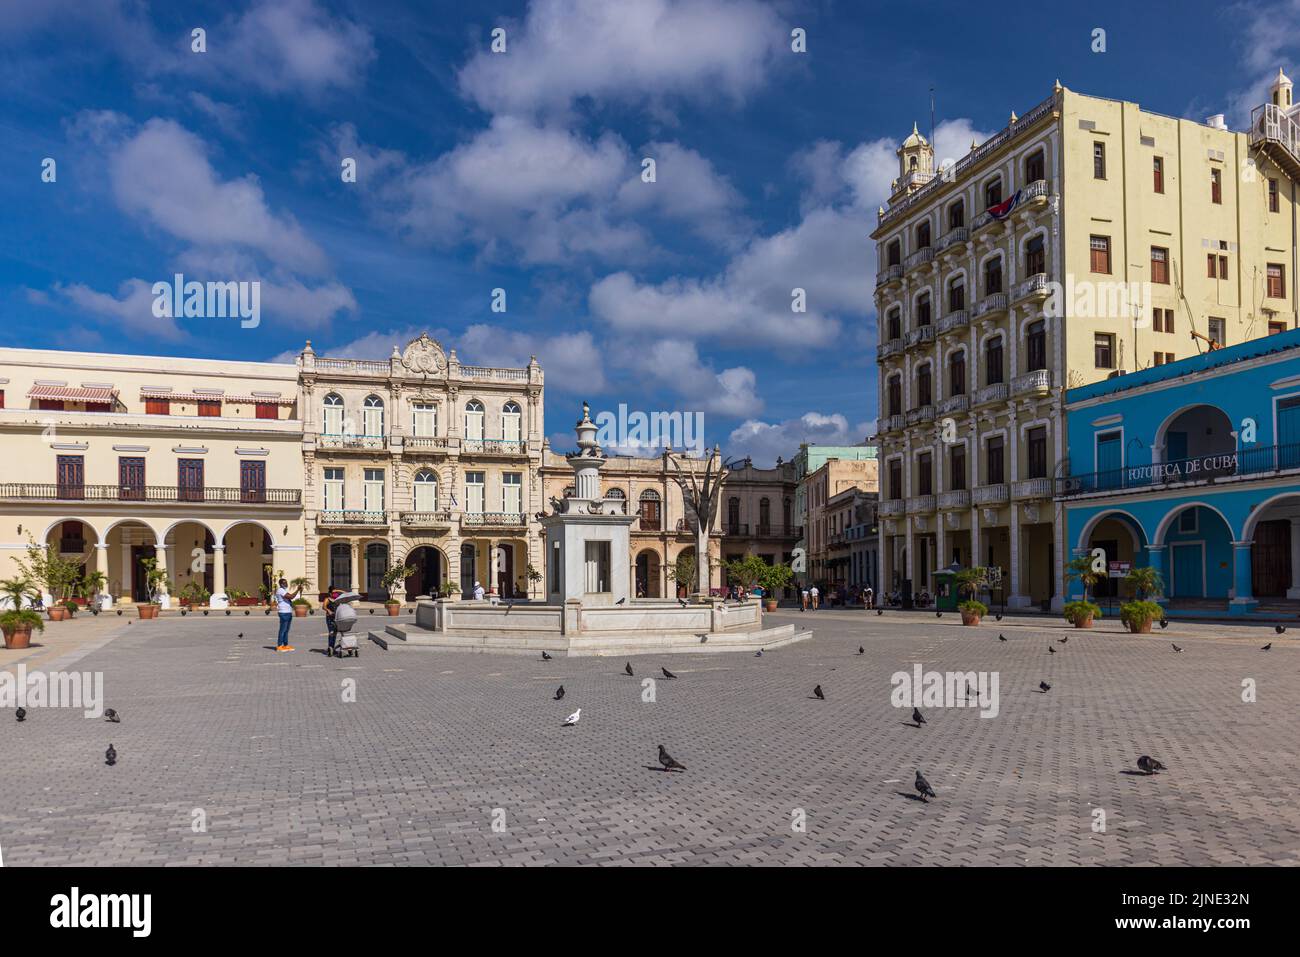 CITTÀ DELL'AVANA, CUBA - 2 GENNAIO: Plaza Vieja durante la pandemia globale di Corona il 2 gennaio 2021 a l'Avana, Cuba Foto Stock